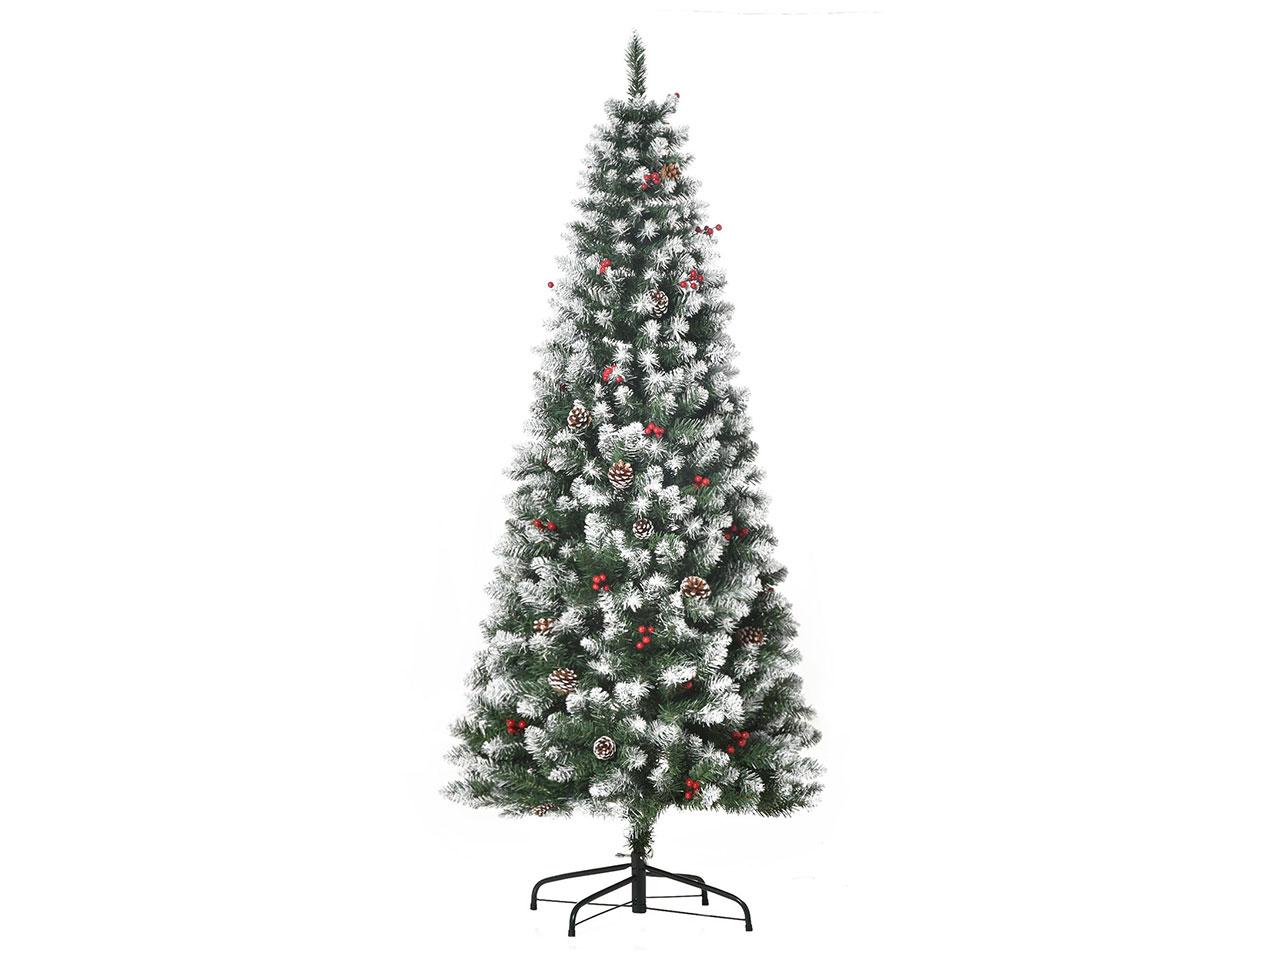 Umělý vánoční stromek 830-382V01, s 618 větvemi, snadná montáž, PVC, kovový, zelený, 65 x 180 cm